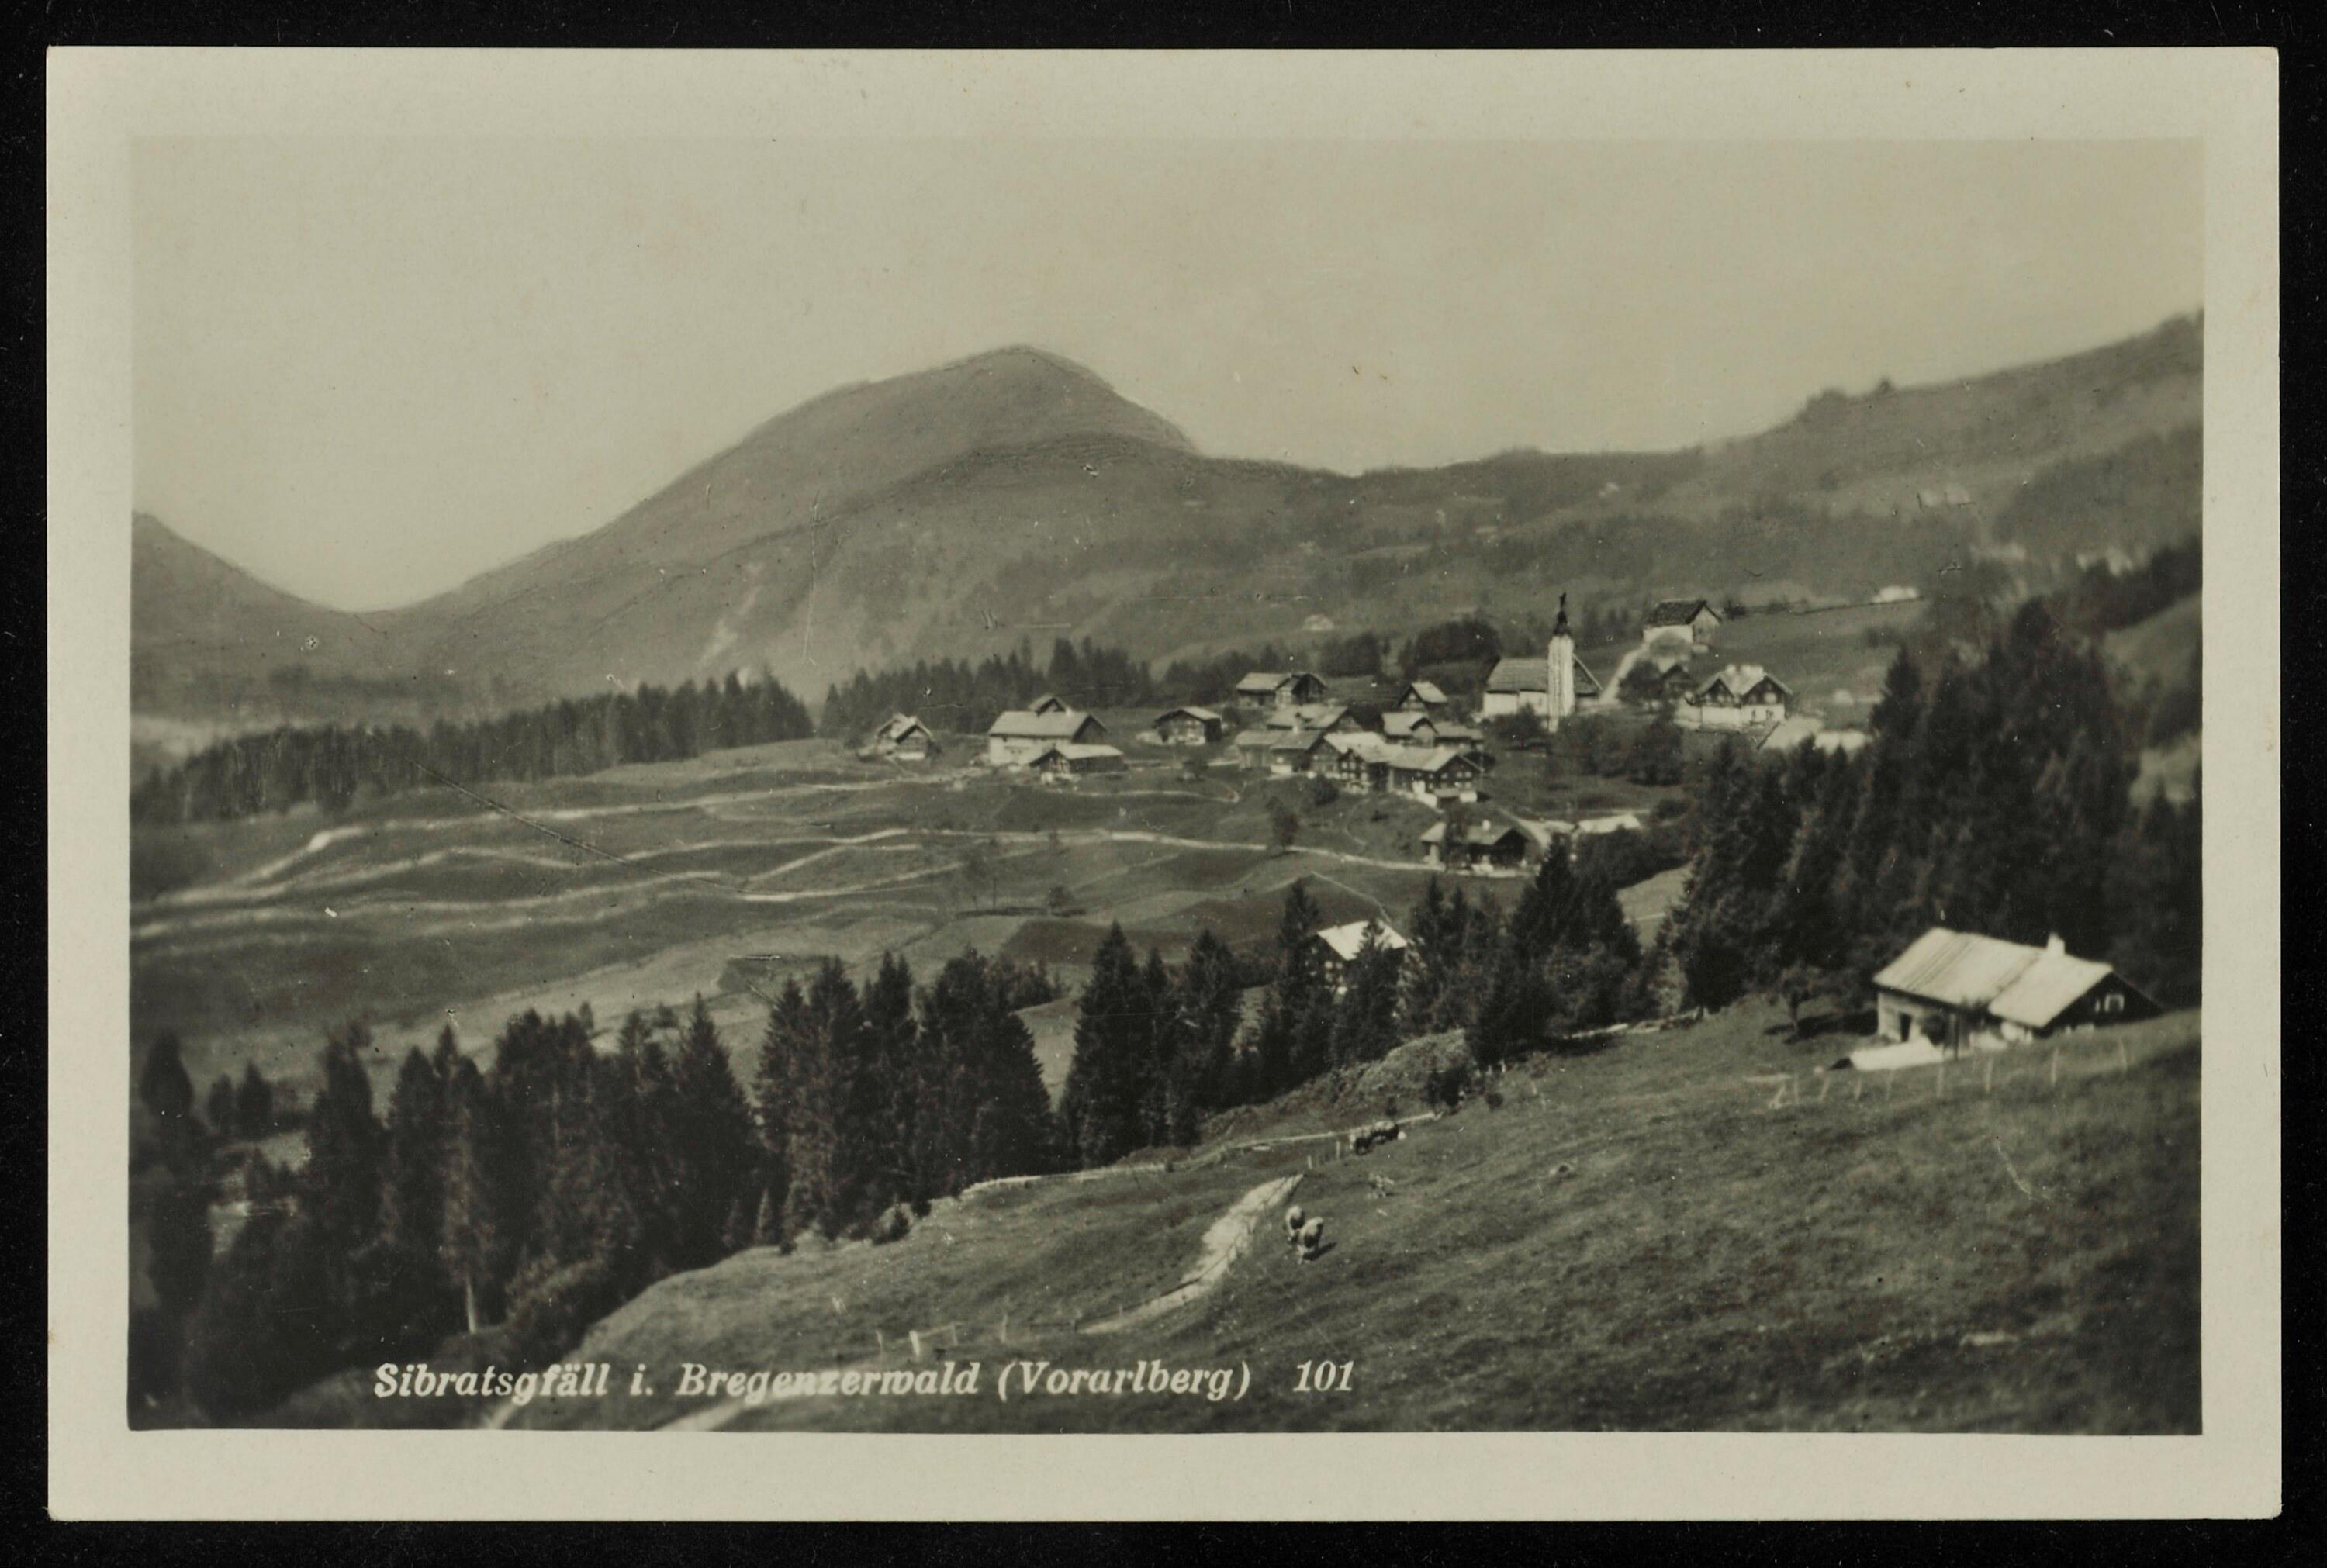 Sibratsgfäll i. Bregenzerwald (Vorarlberg)></div>


    <hr>
    <div class=